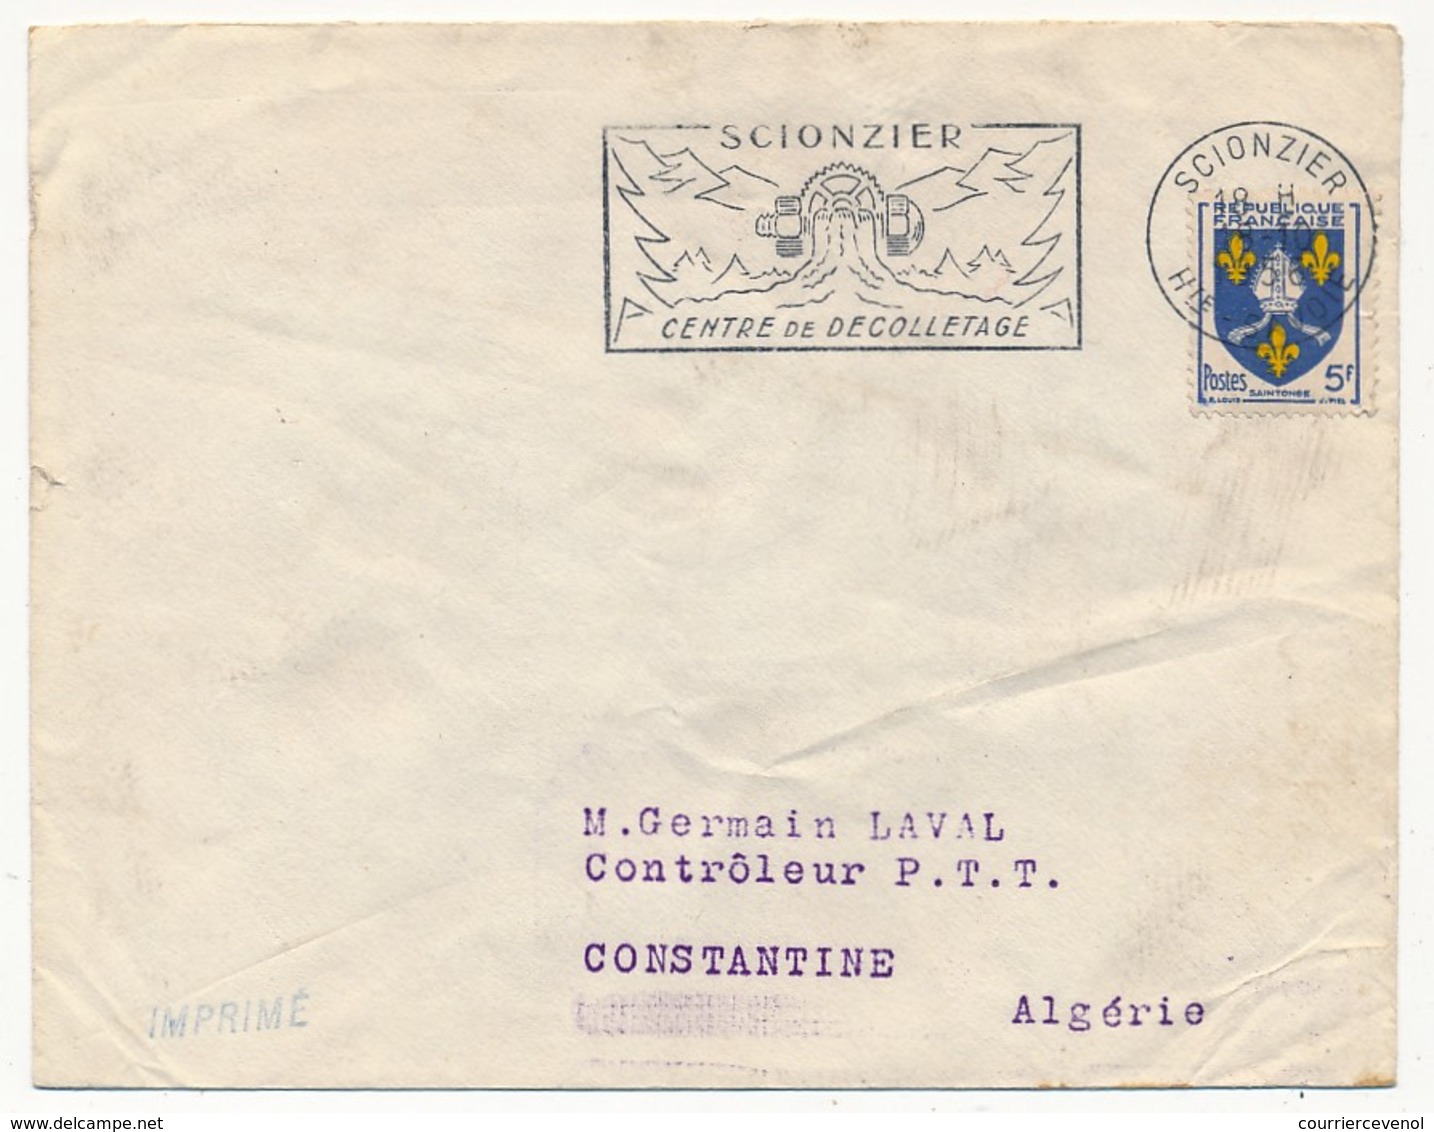 FRANCE - OMEC "SCIONZIER, Centre De Décolletage" - Scionzier (Hte Savoie) 1958 S/ 5F Blason Saintonge - Maschinenstempel (Werbestempel)